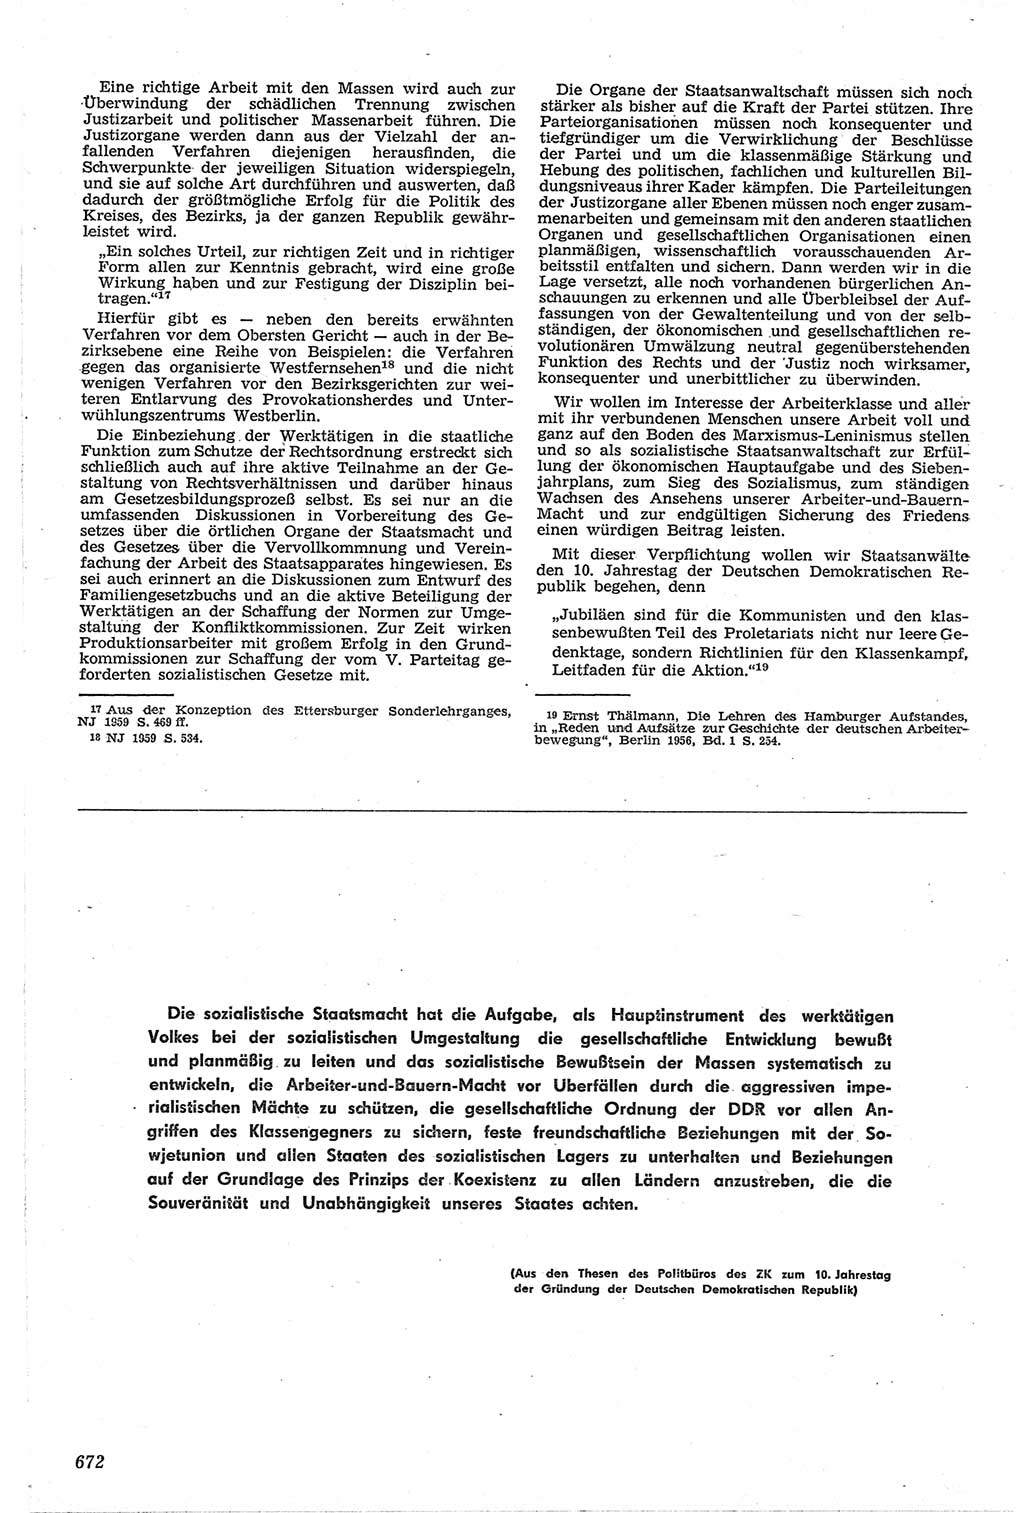 Neue Justiz (NJ), Zeitschrift für Recht und Rechtswissenschaft [Deutsche Demokratische Republik (DDR)], 13. Jahrgang 1959, Seite 672 (NJ DDR 1959, S. 672)